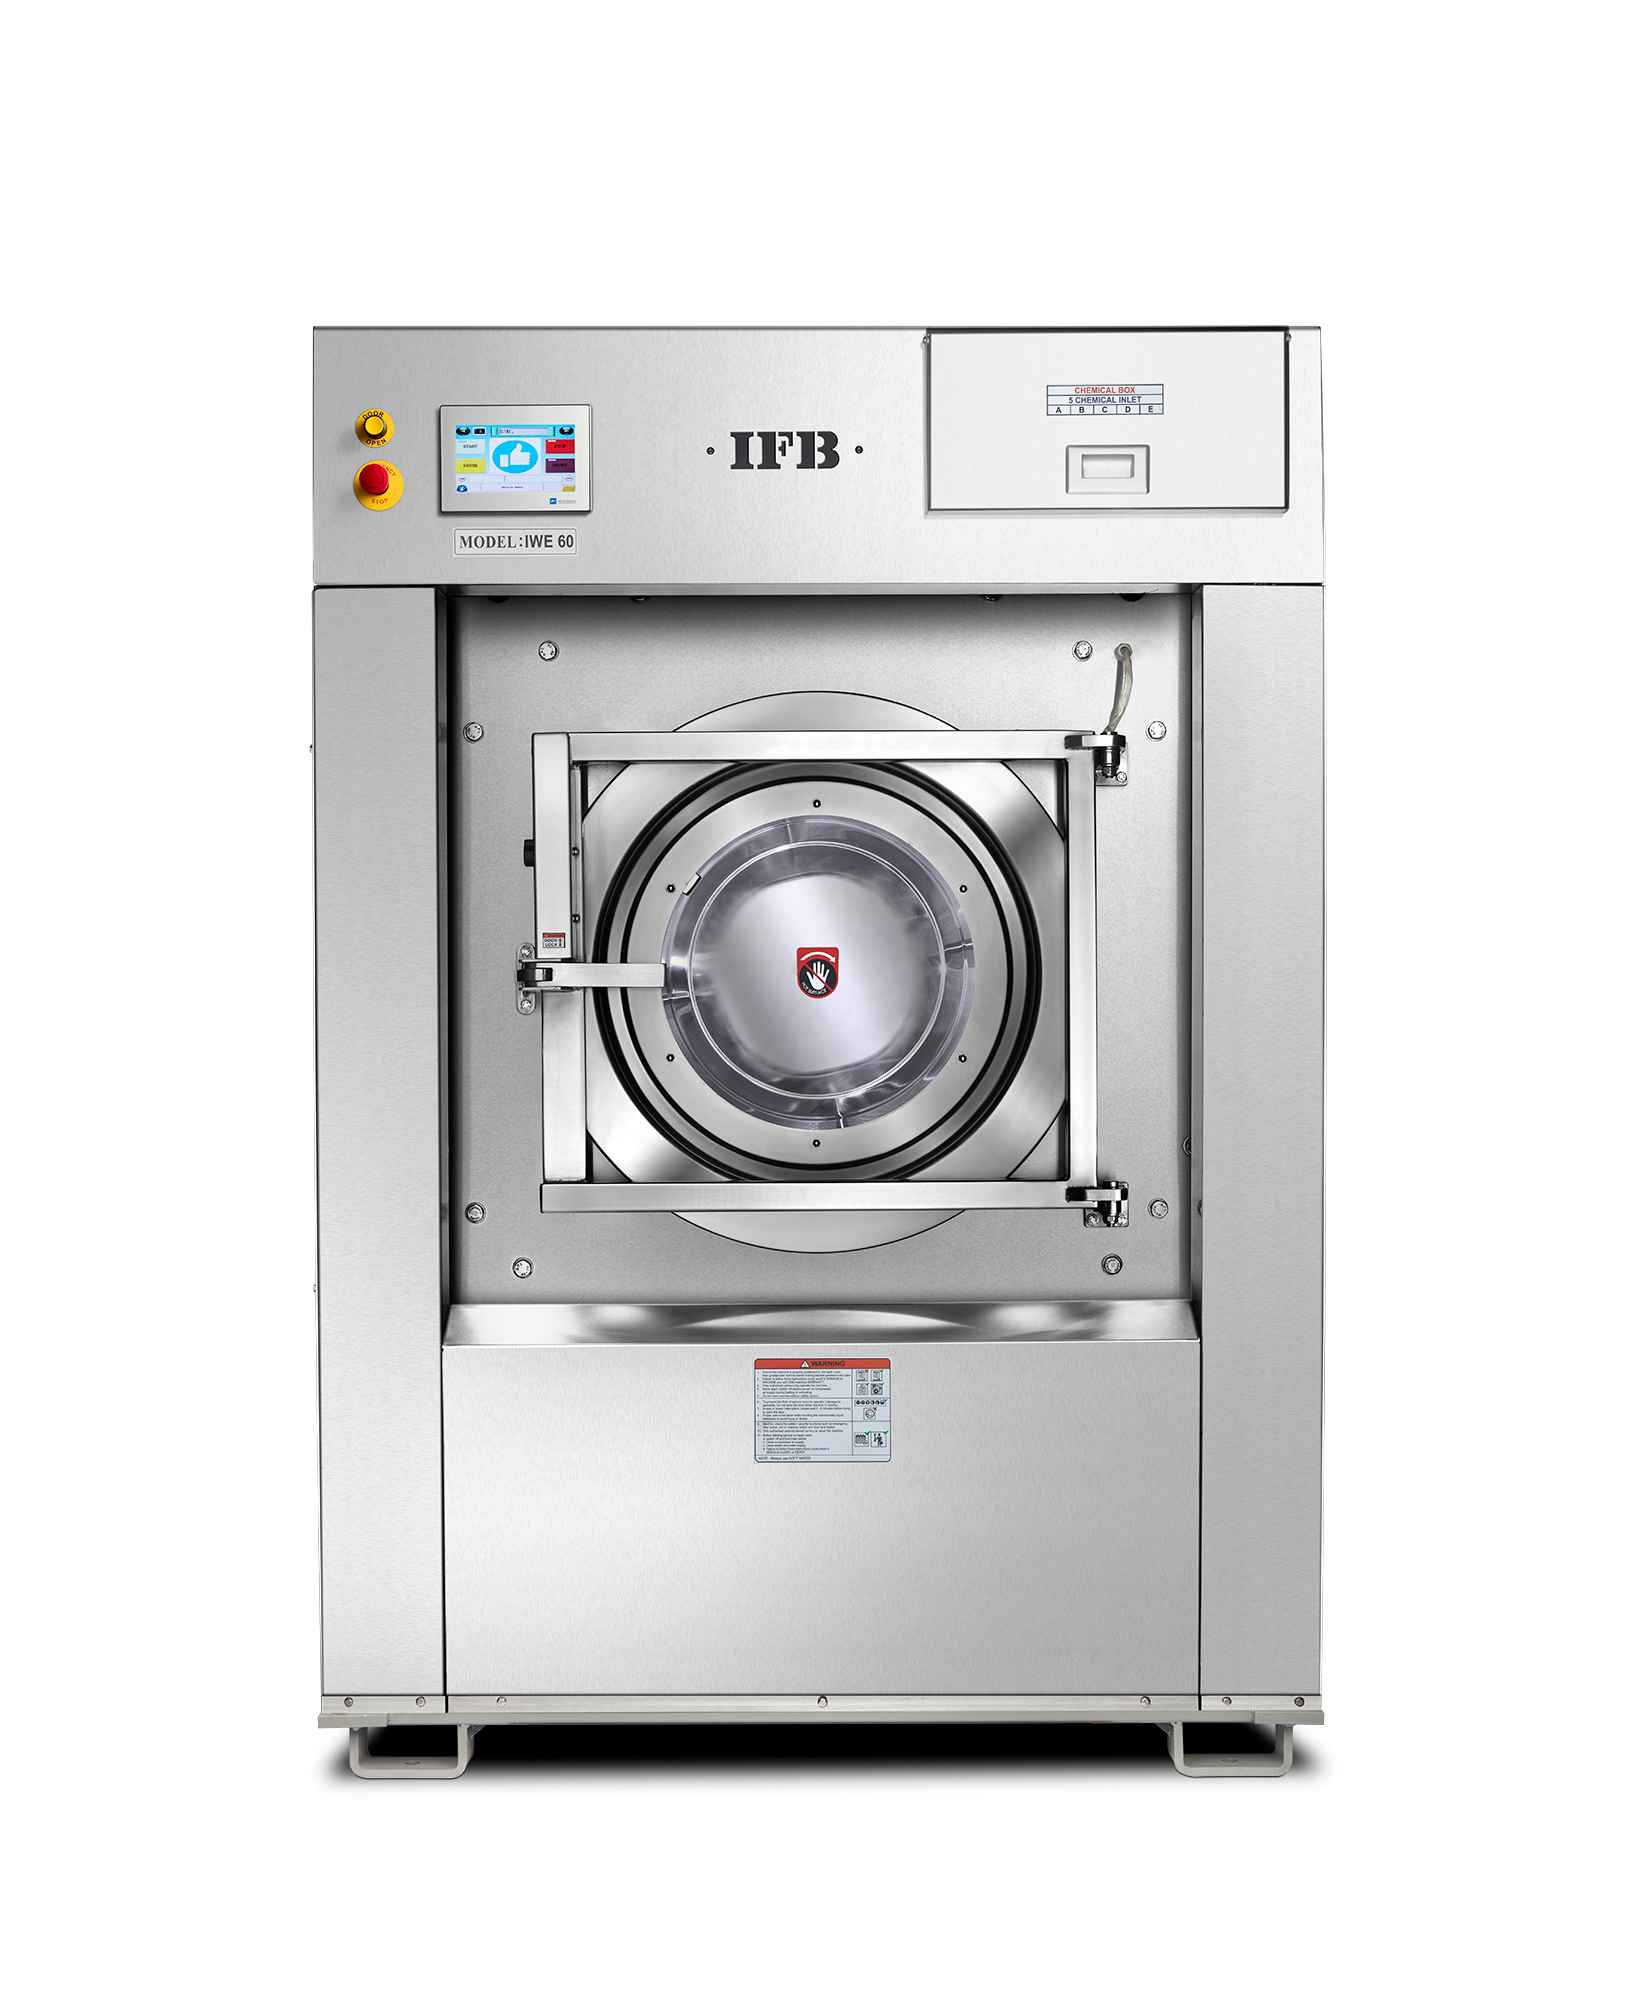 Профессиональная стиральная машина, бренд IFB, модель IWE60, загрузка до 60 кг. 